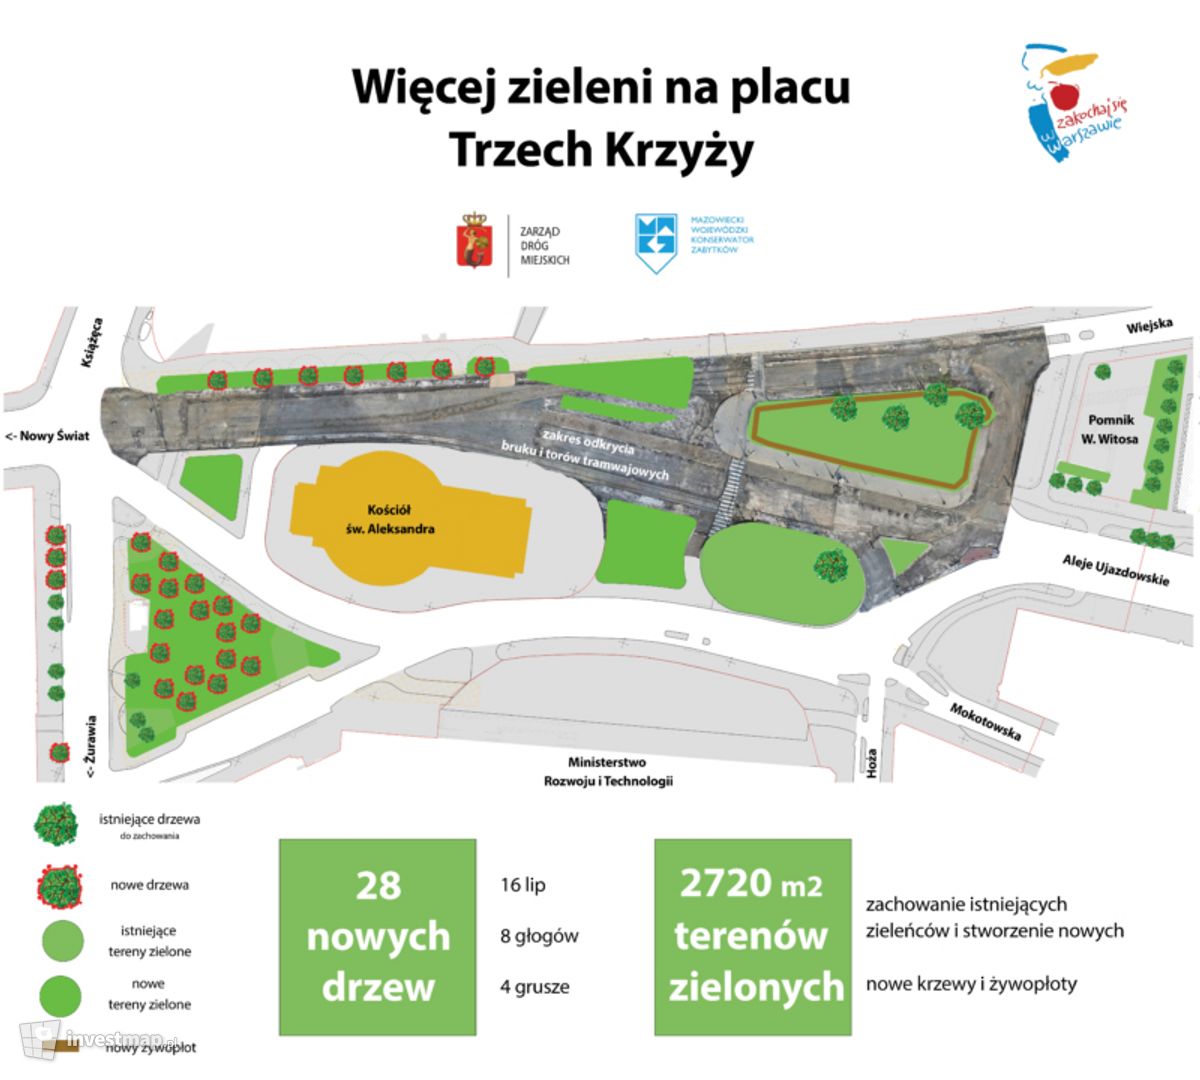 Zarząd Dróg Miejskich w Warszawie